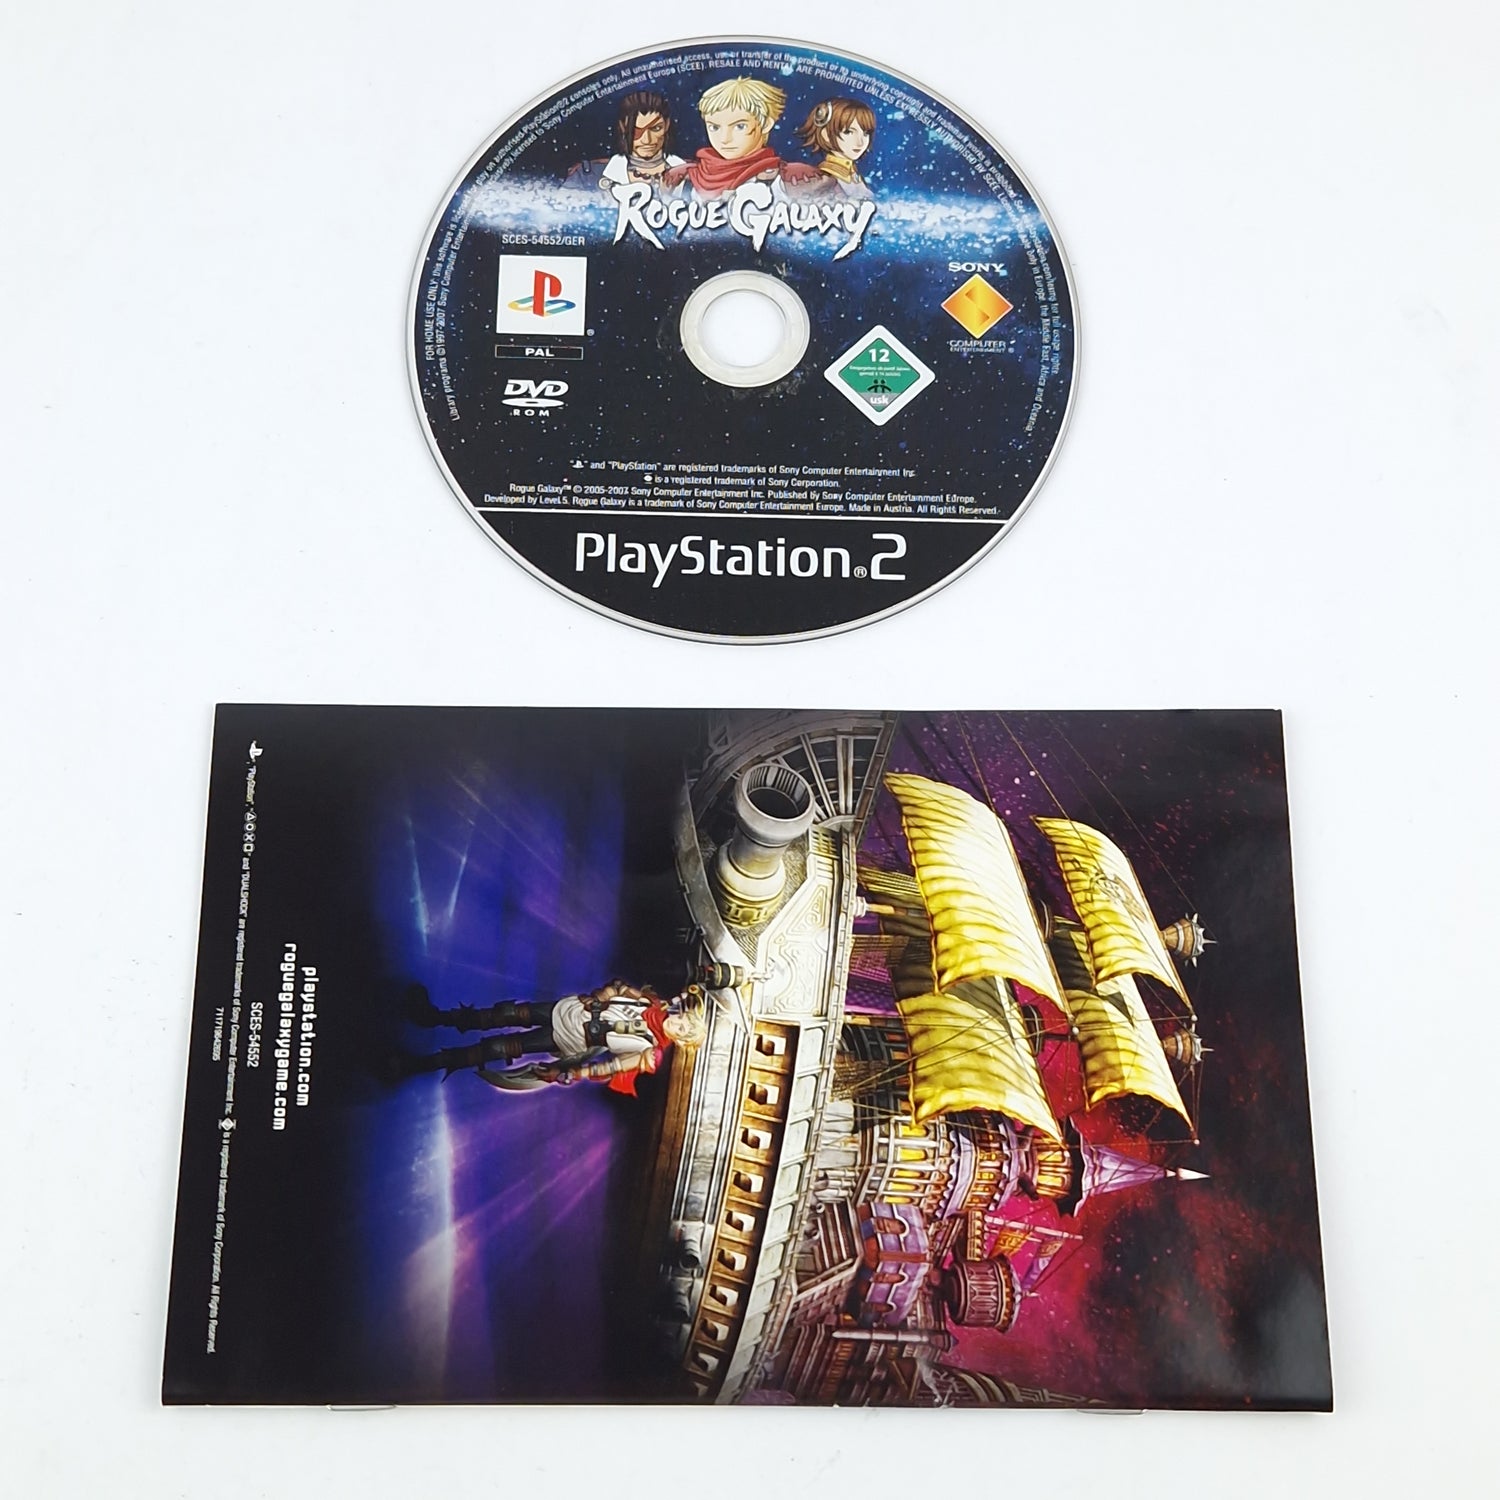 Playstation 2 game: Rogue Galaxy - CD manual OVP cib / SONY PS2 PAL